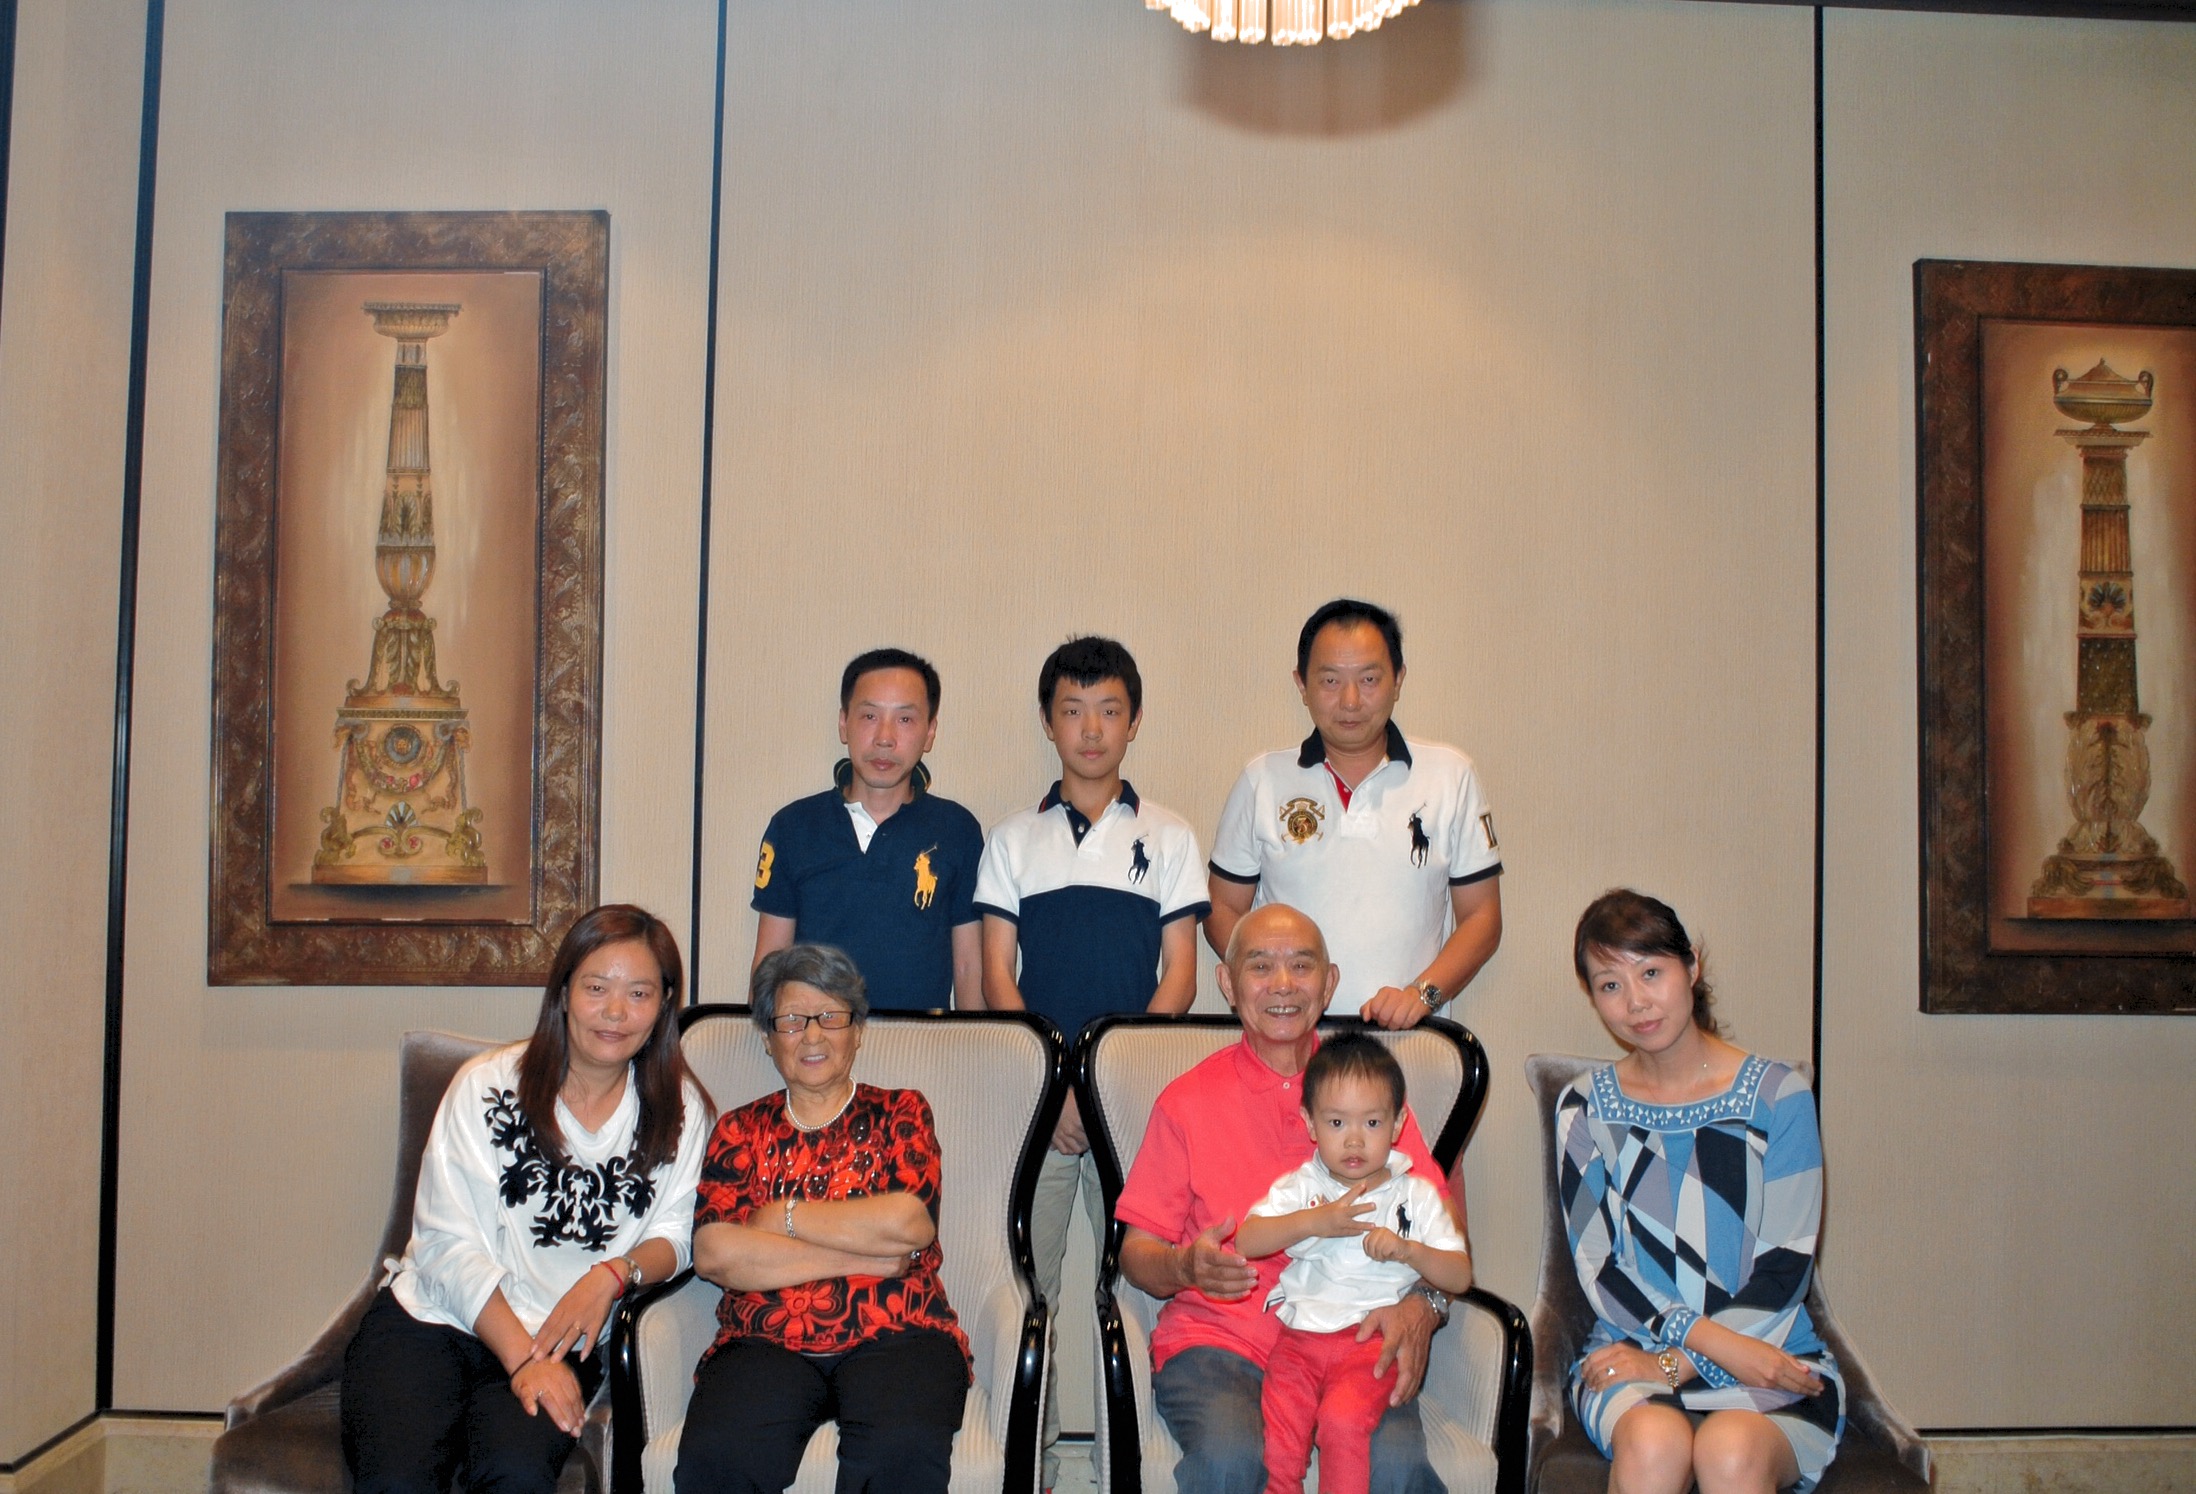 2014年10份儿女们为父母八十大寿星庆贺设宴席祝福三代同堂，有孙子、外孙。全家合影留念。（儿子，媳妇孙子乃日本籍）。（於上海市一酒家摄影留念）。